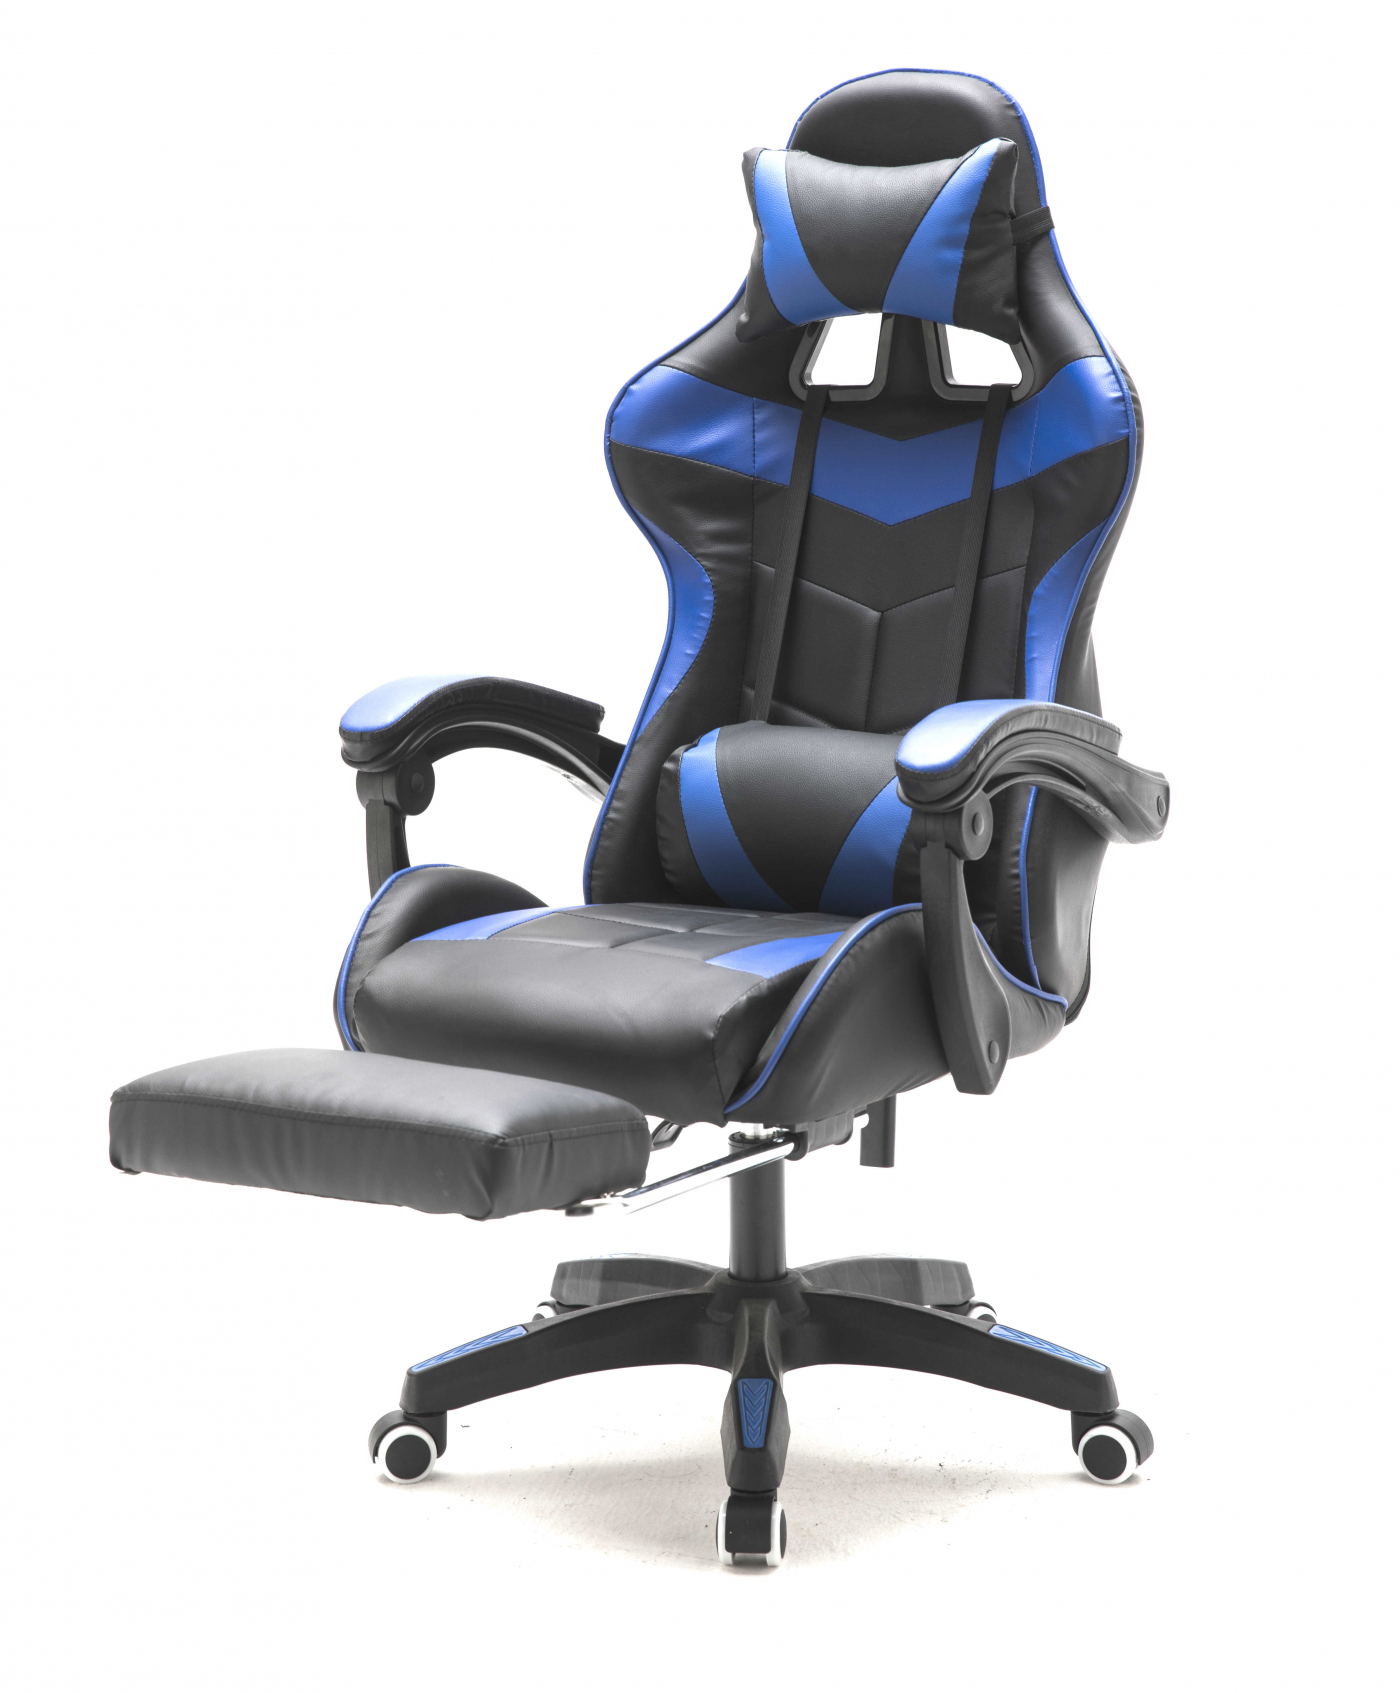 met voetsteun Cyclone tieners - bureaustoel - racing gaming stoel blauw zwart - Meubel Plein